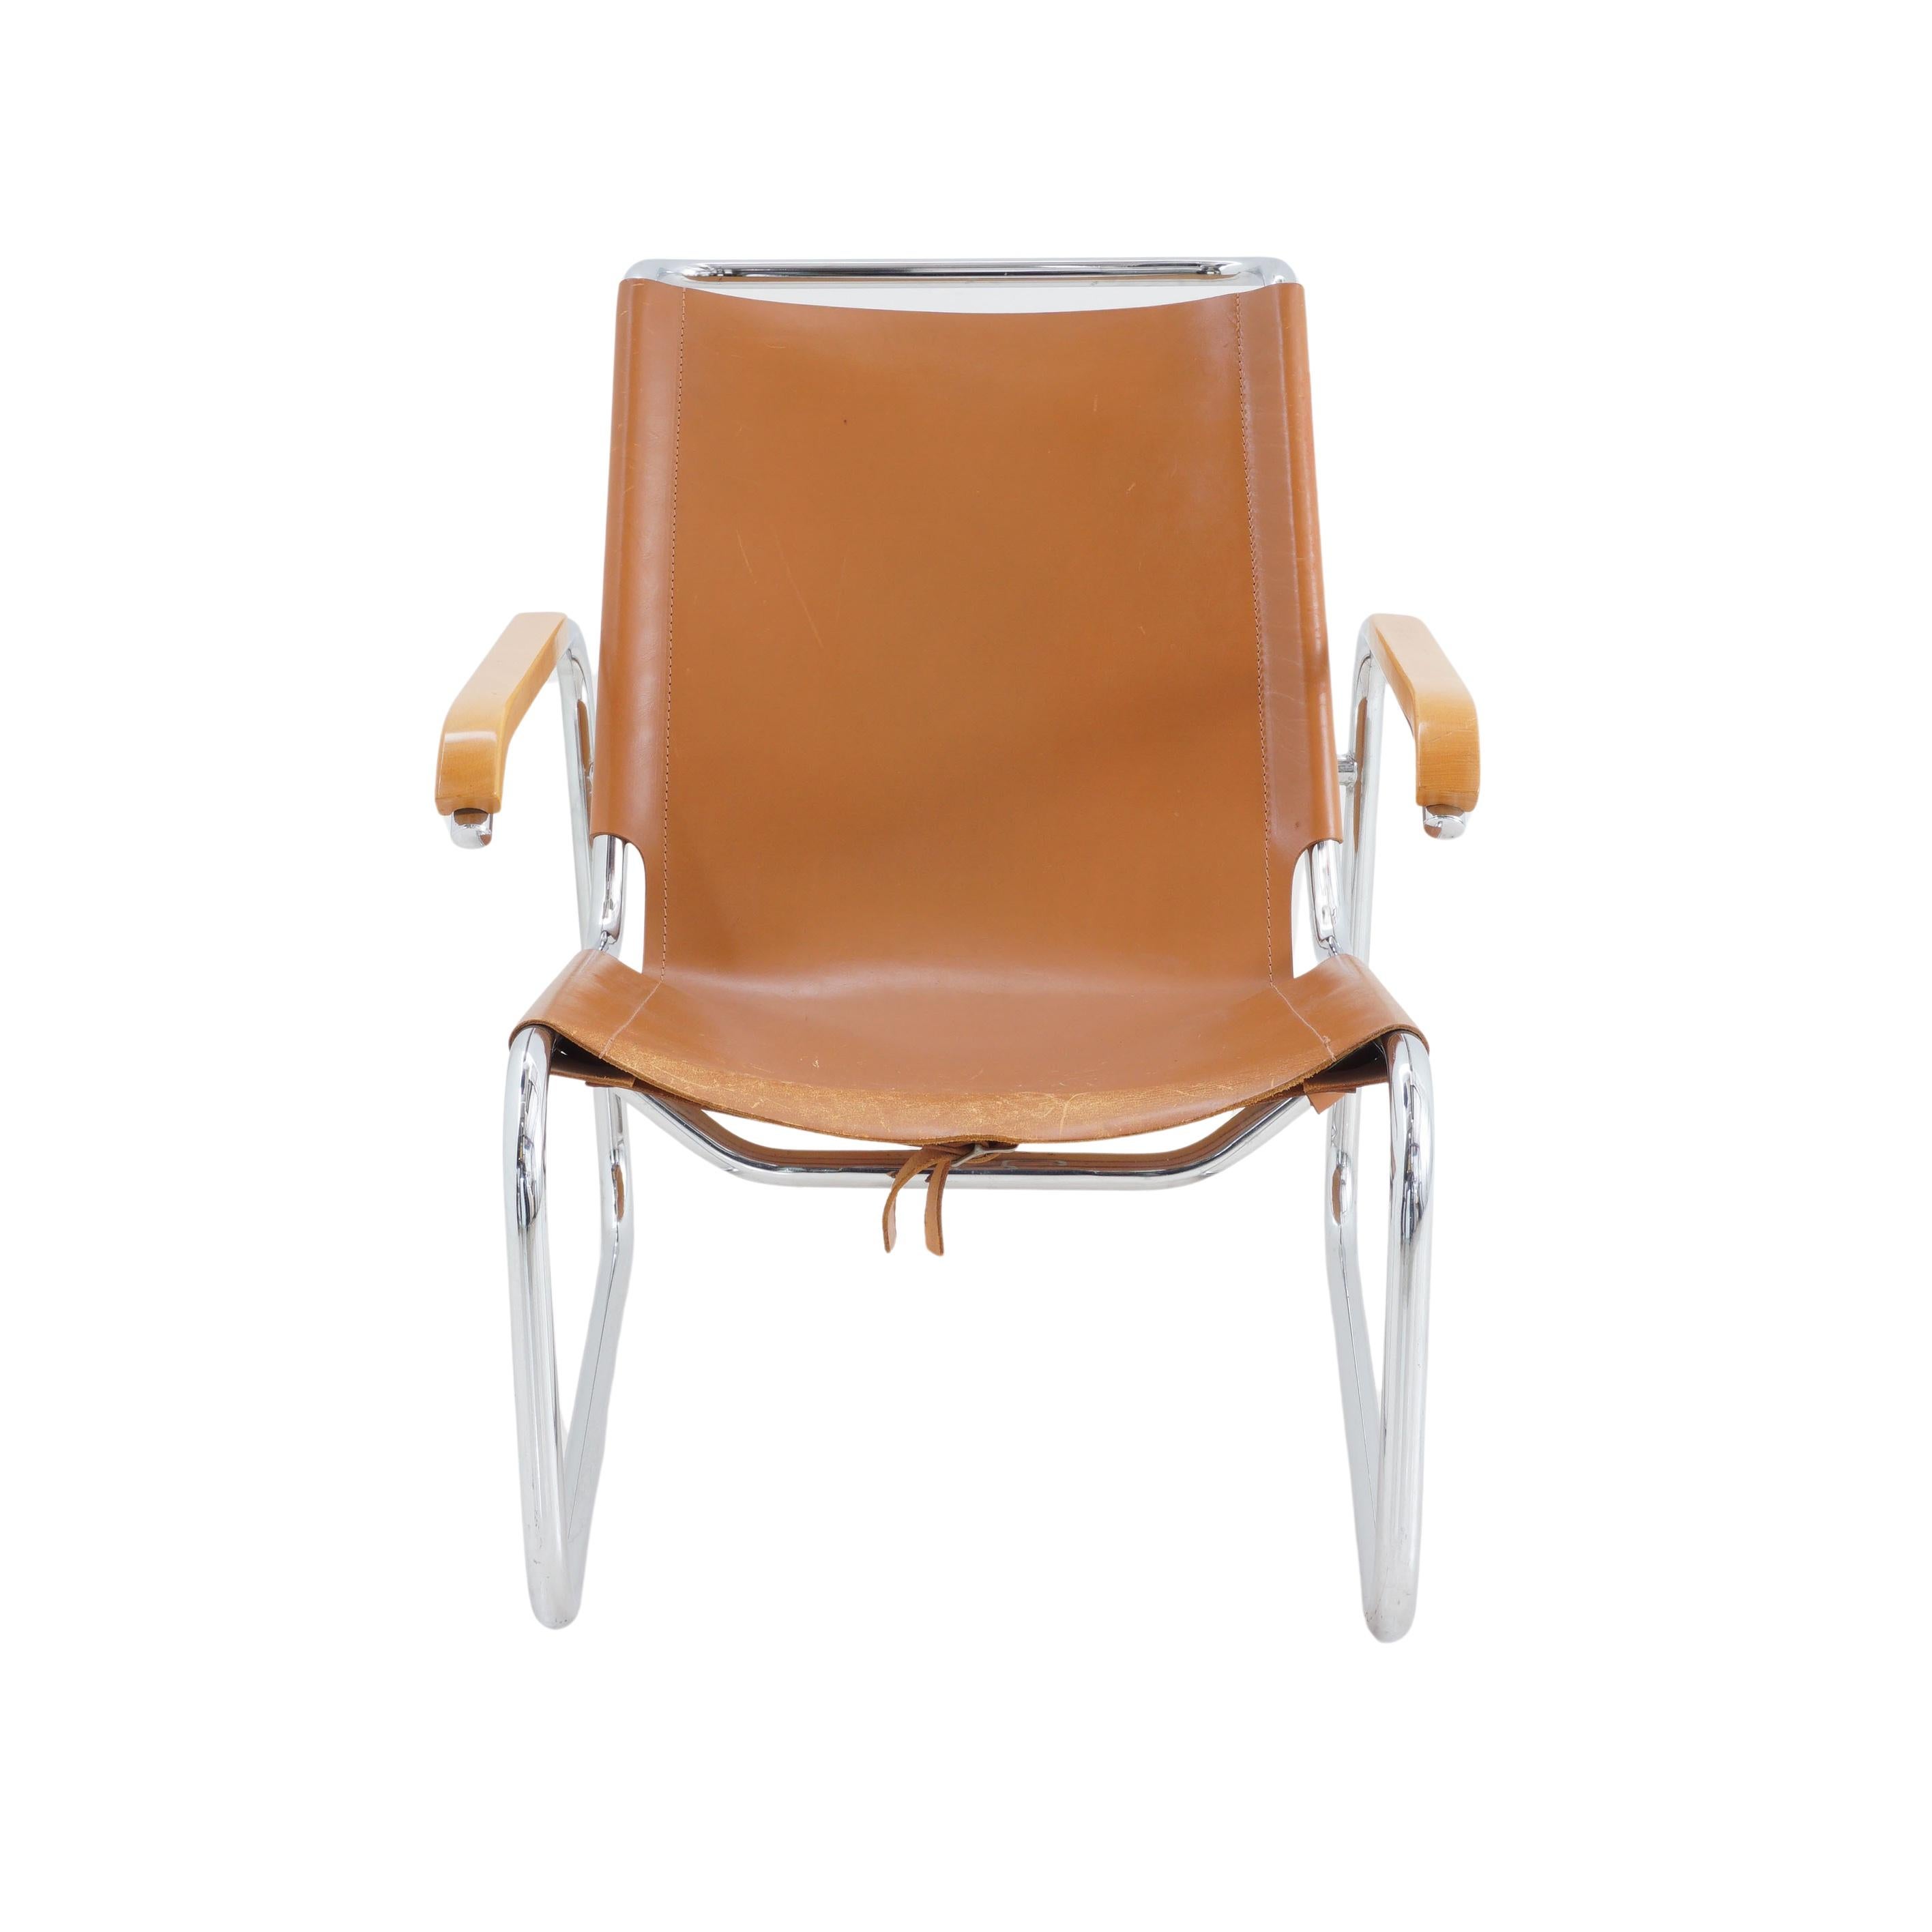 Parlons de cette chaise longue Marcel Breuer des années 1930. Il est recouvert d'un cuir cognac épais qui ressemble à la peau parfaitement vieillie d'une starlette d'Hollywood, et il s'incline lorsque vous vous penchez en arrière, parce qu'il est